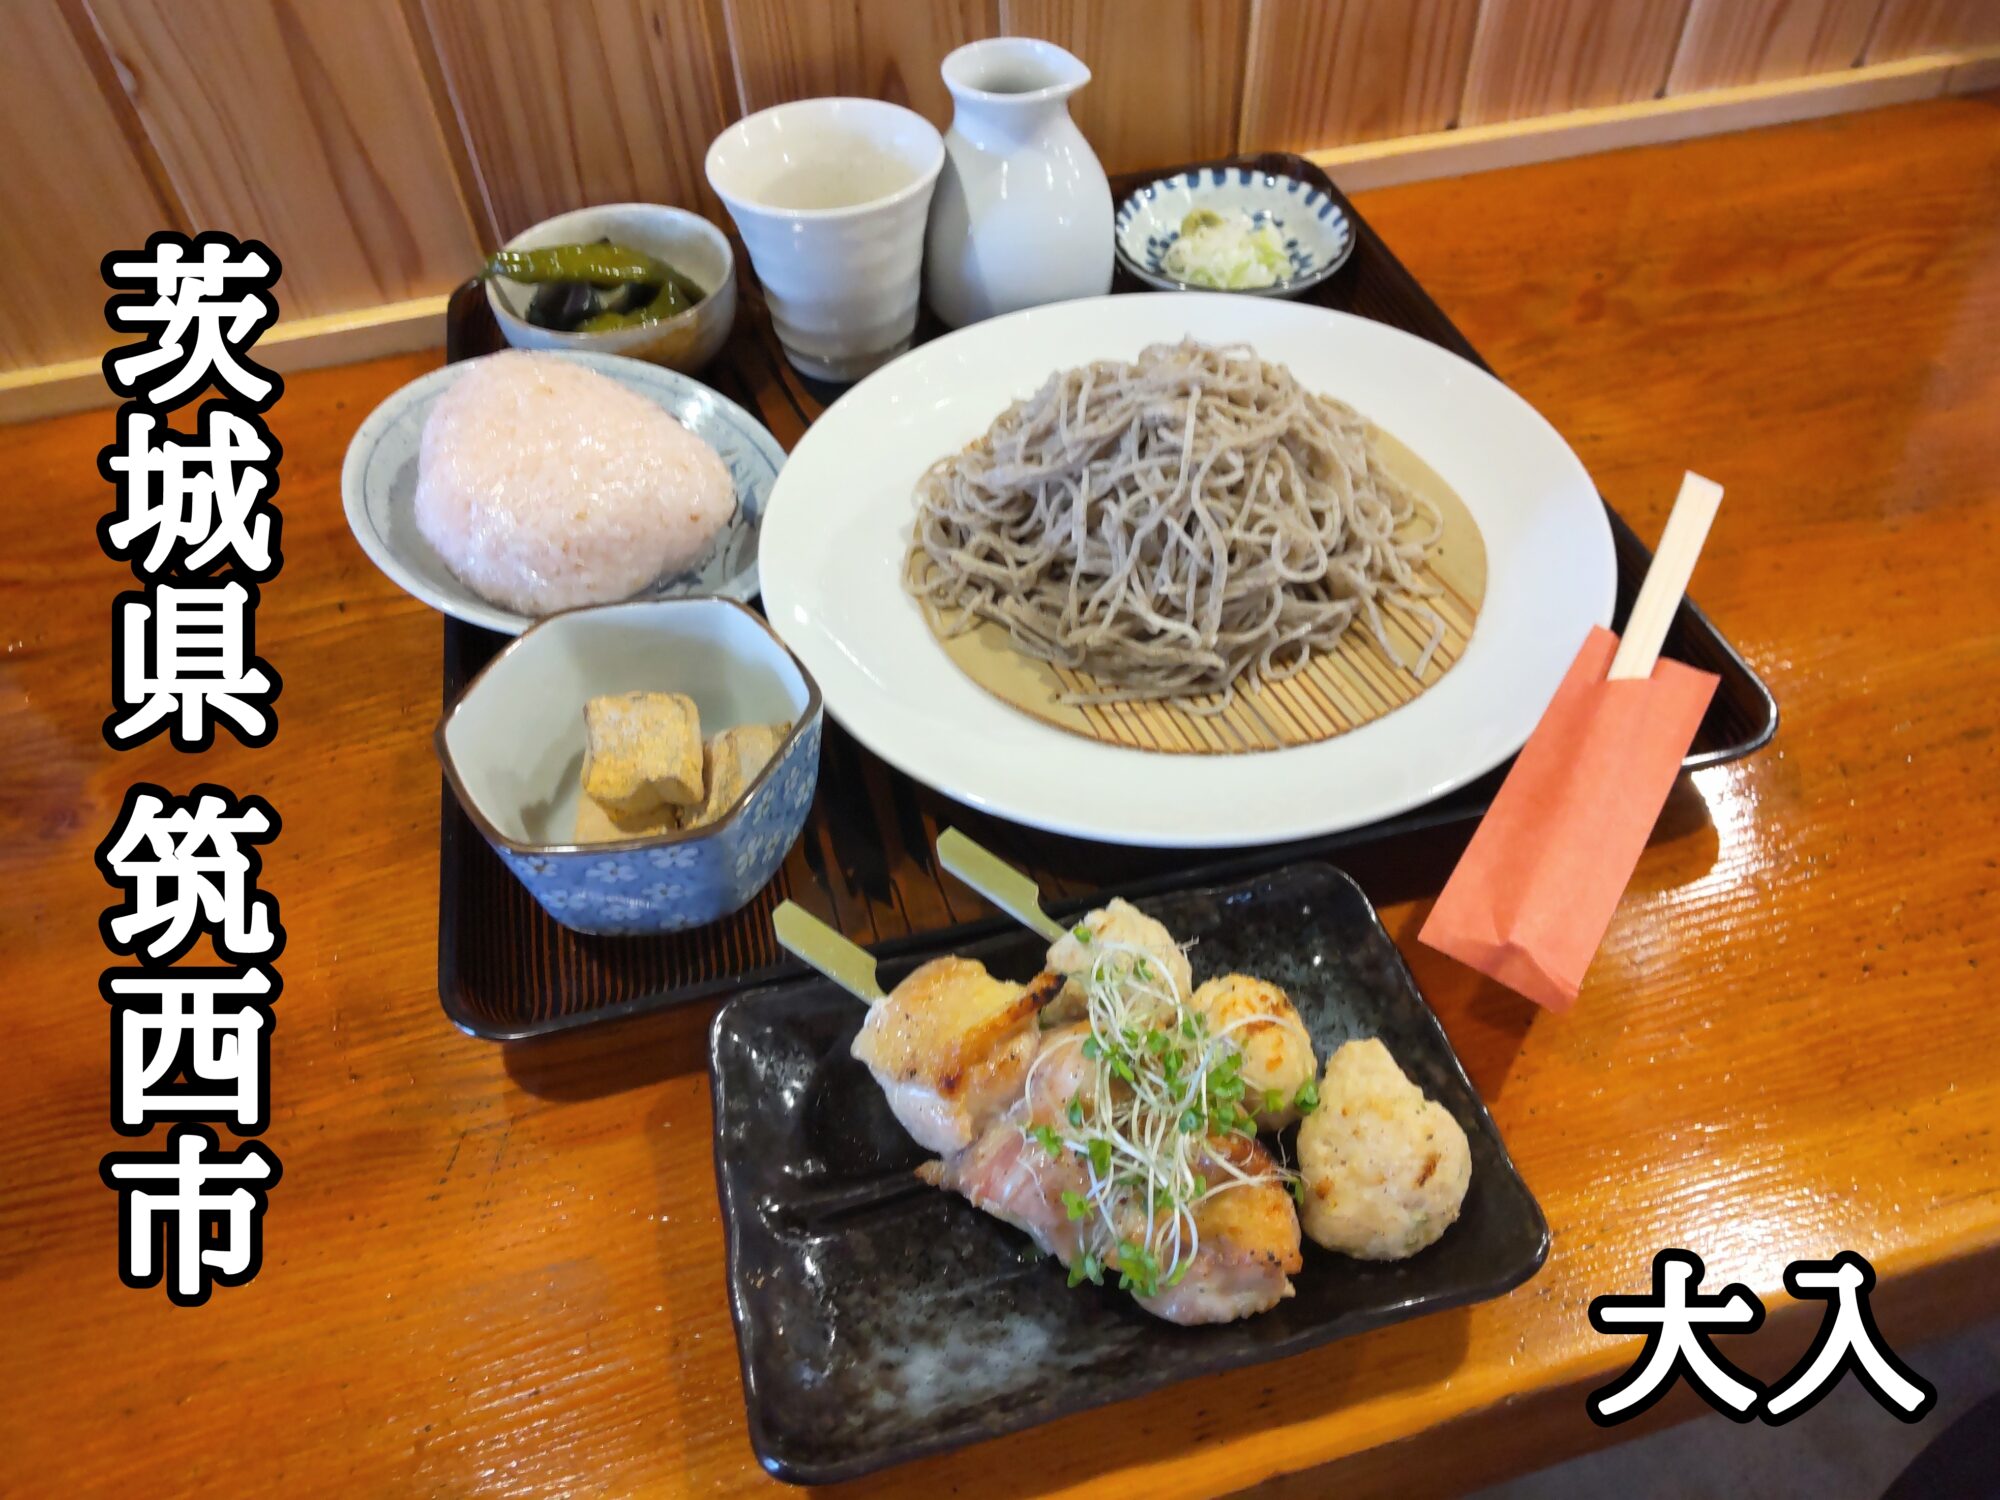 【茨城県】【筑西市】「大入」居酒屋さんで呑みたくなる美味しいお蕎麦ランチセット